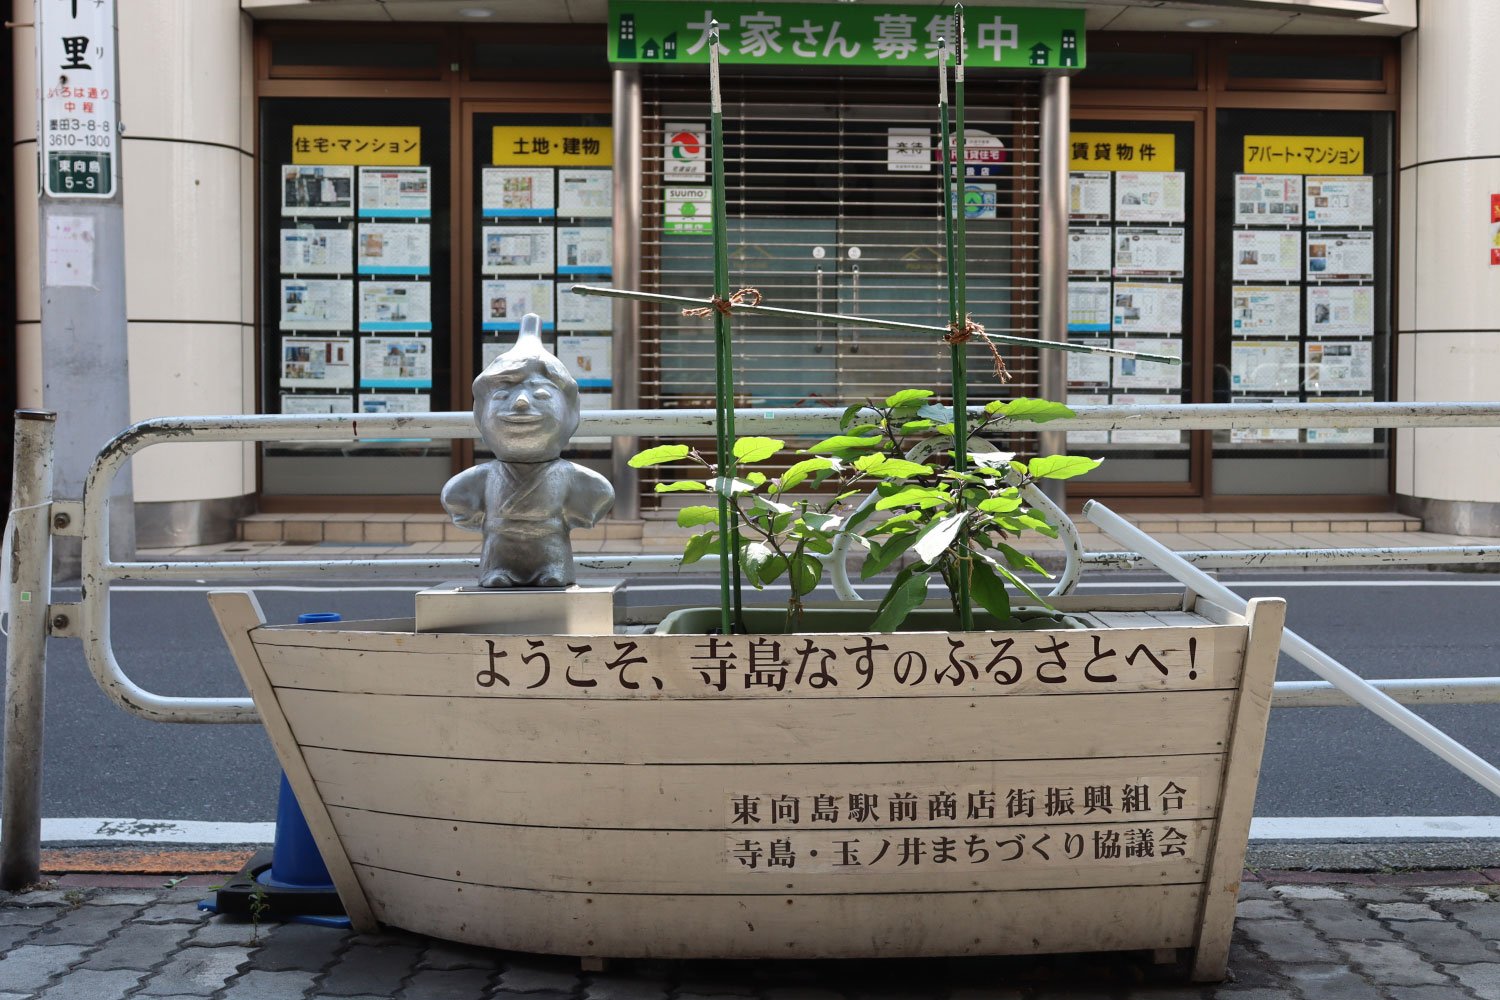 東向島駅前で人びとを出迎える「寺島なす之介」。